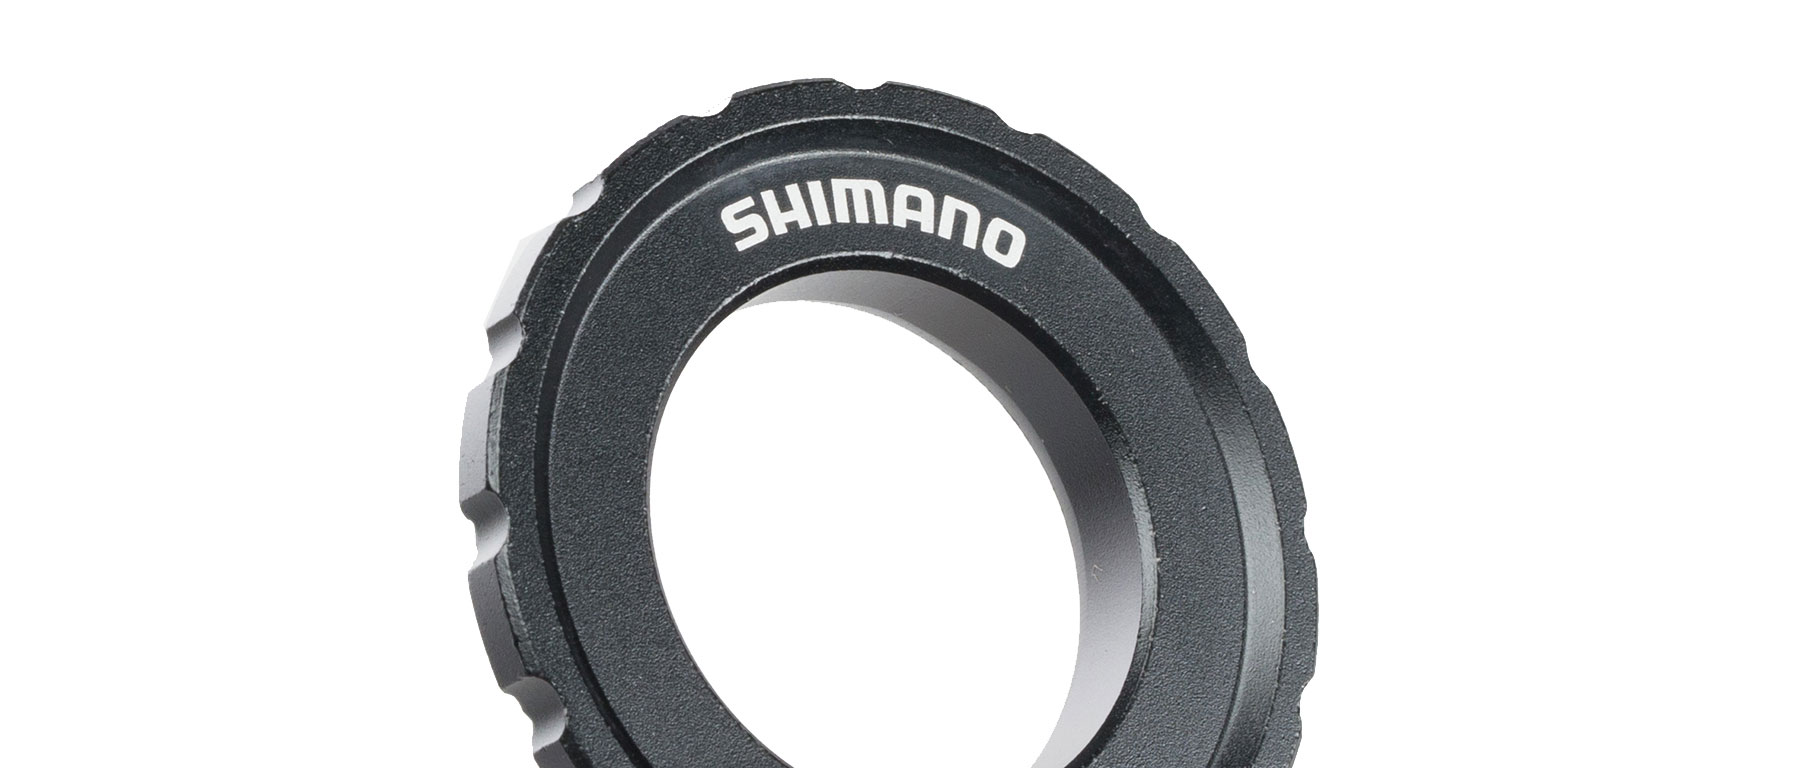 Shimano HB-M8010 Center Lock Disc Rotor Lockring